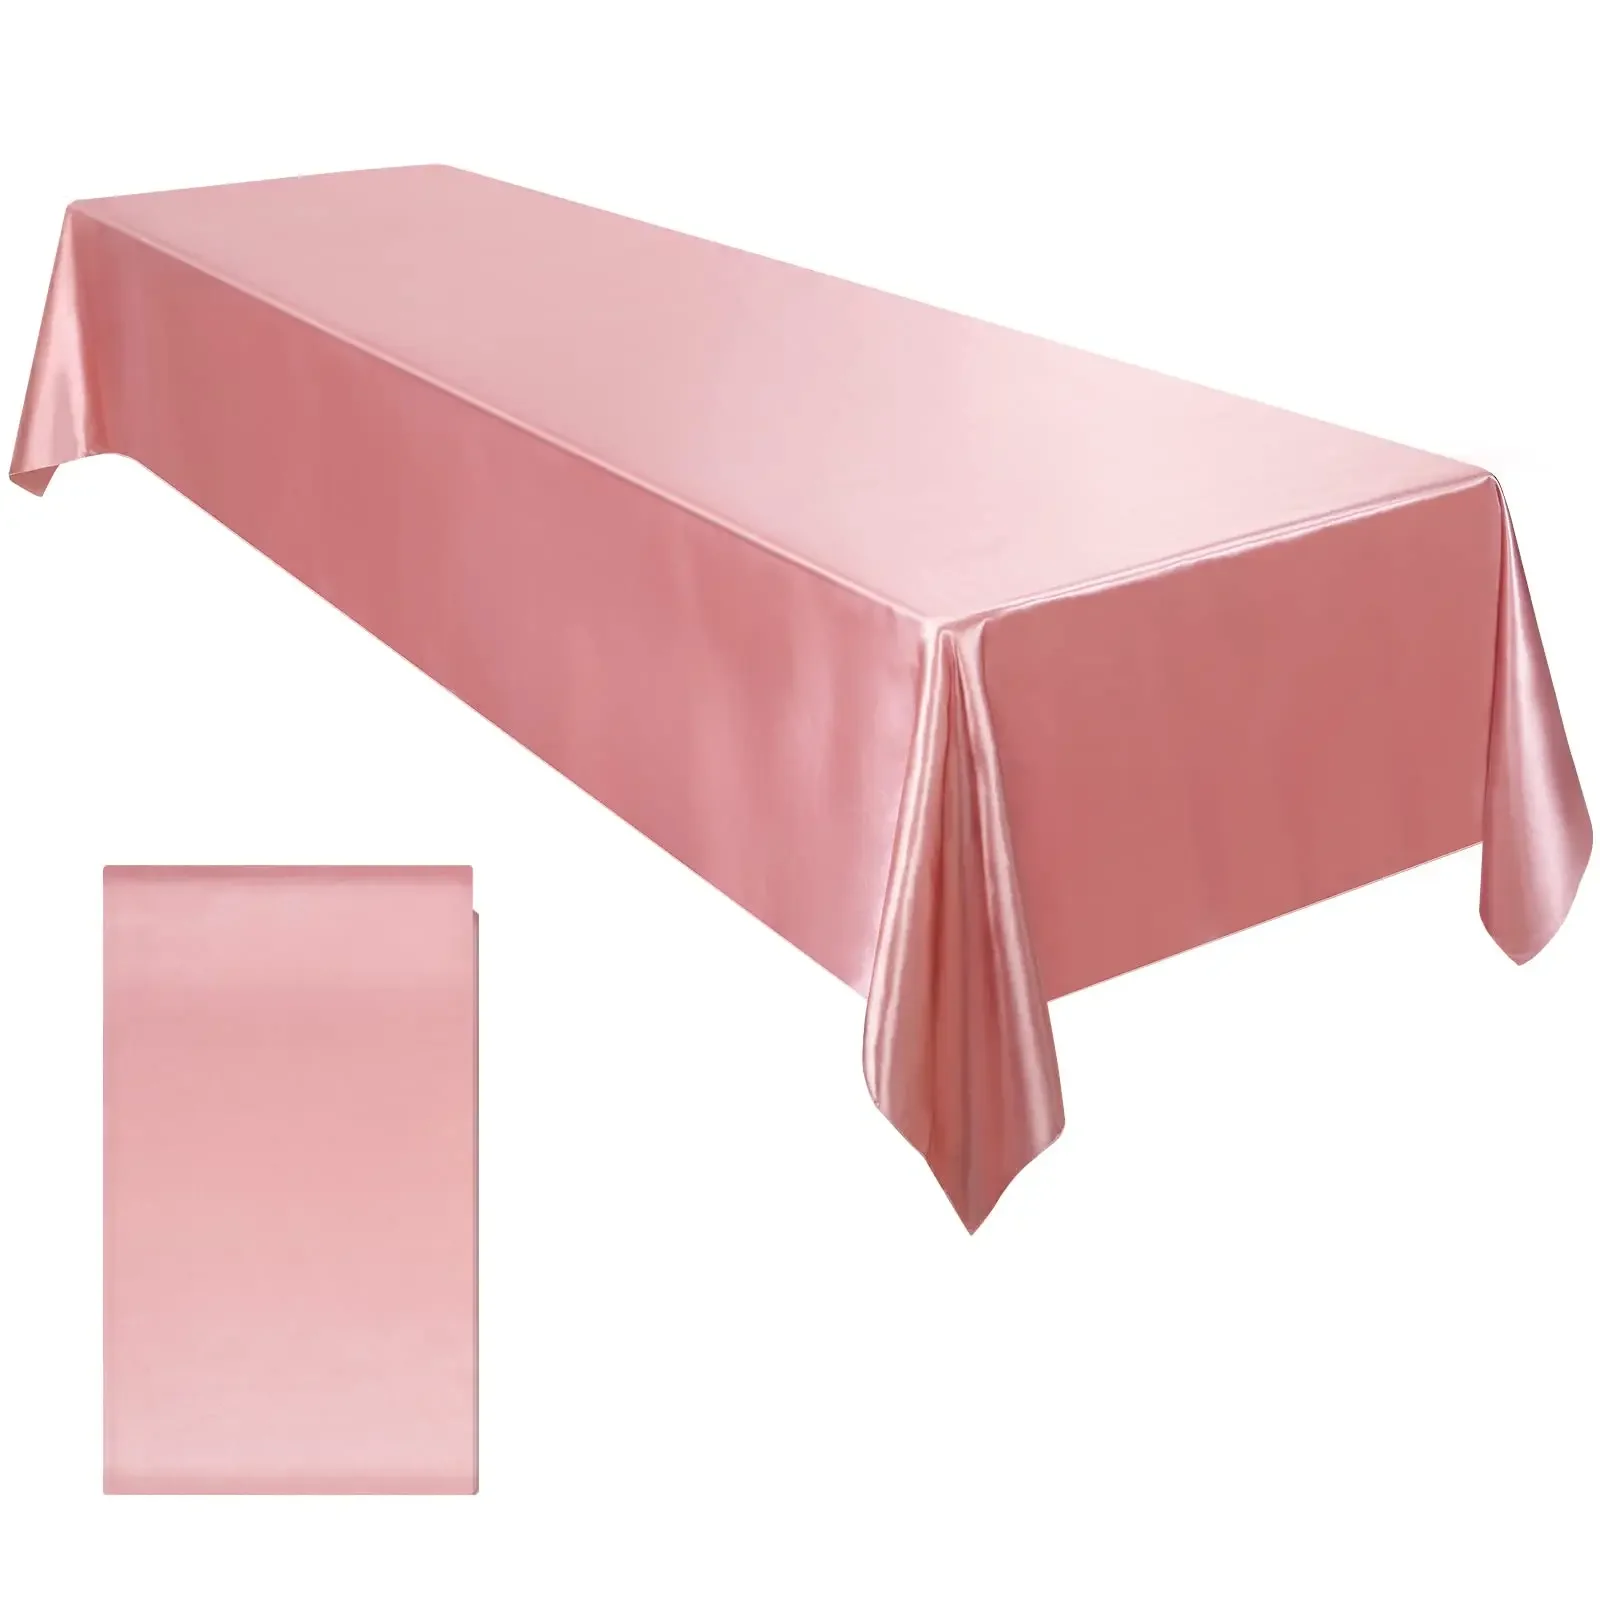 

Satynowy obrus prostokątna nakładka jasny jedwab gładka tkanina wystrój stołu na ślub stół bankietowy wystrój stołu